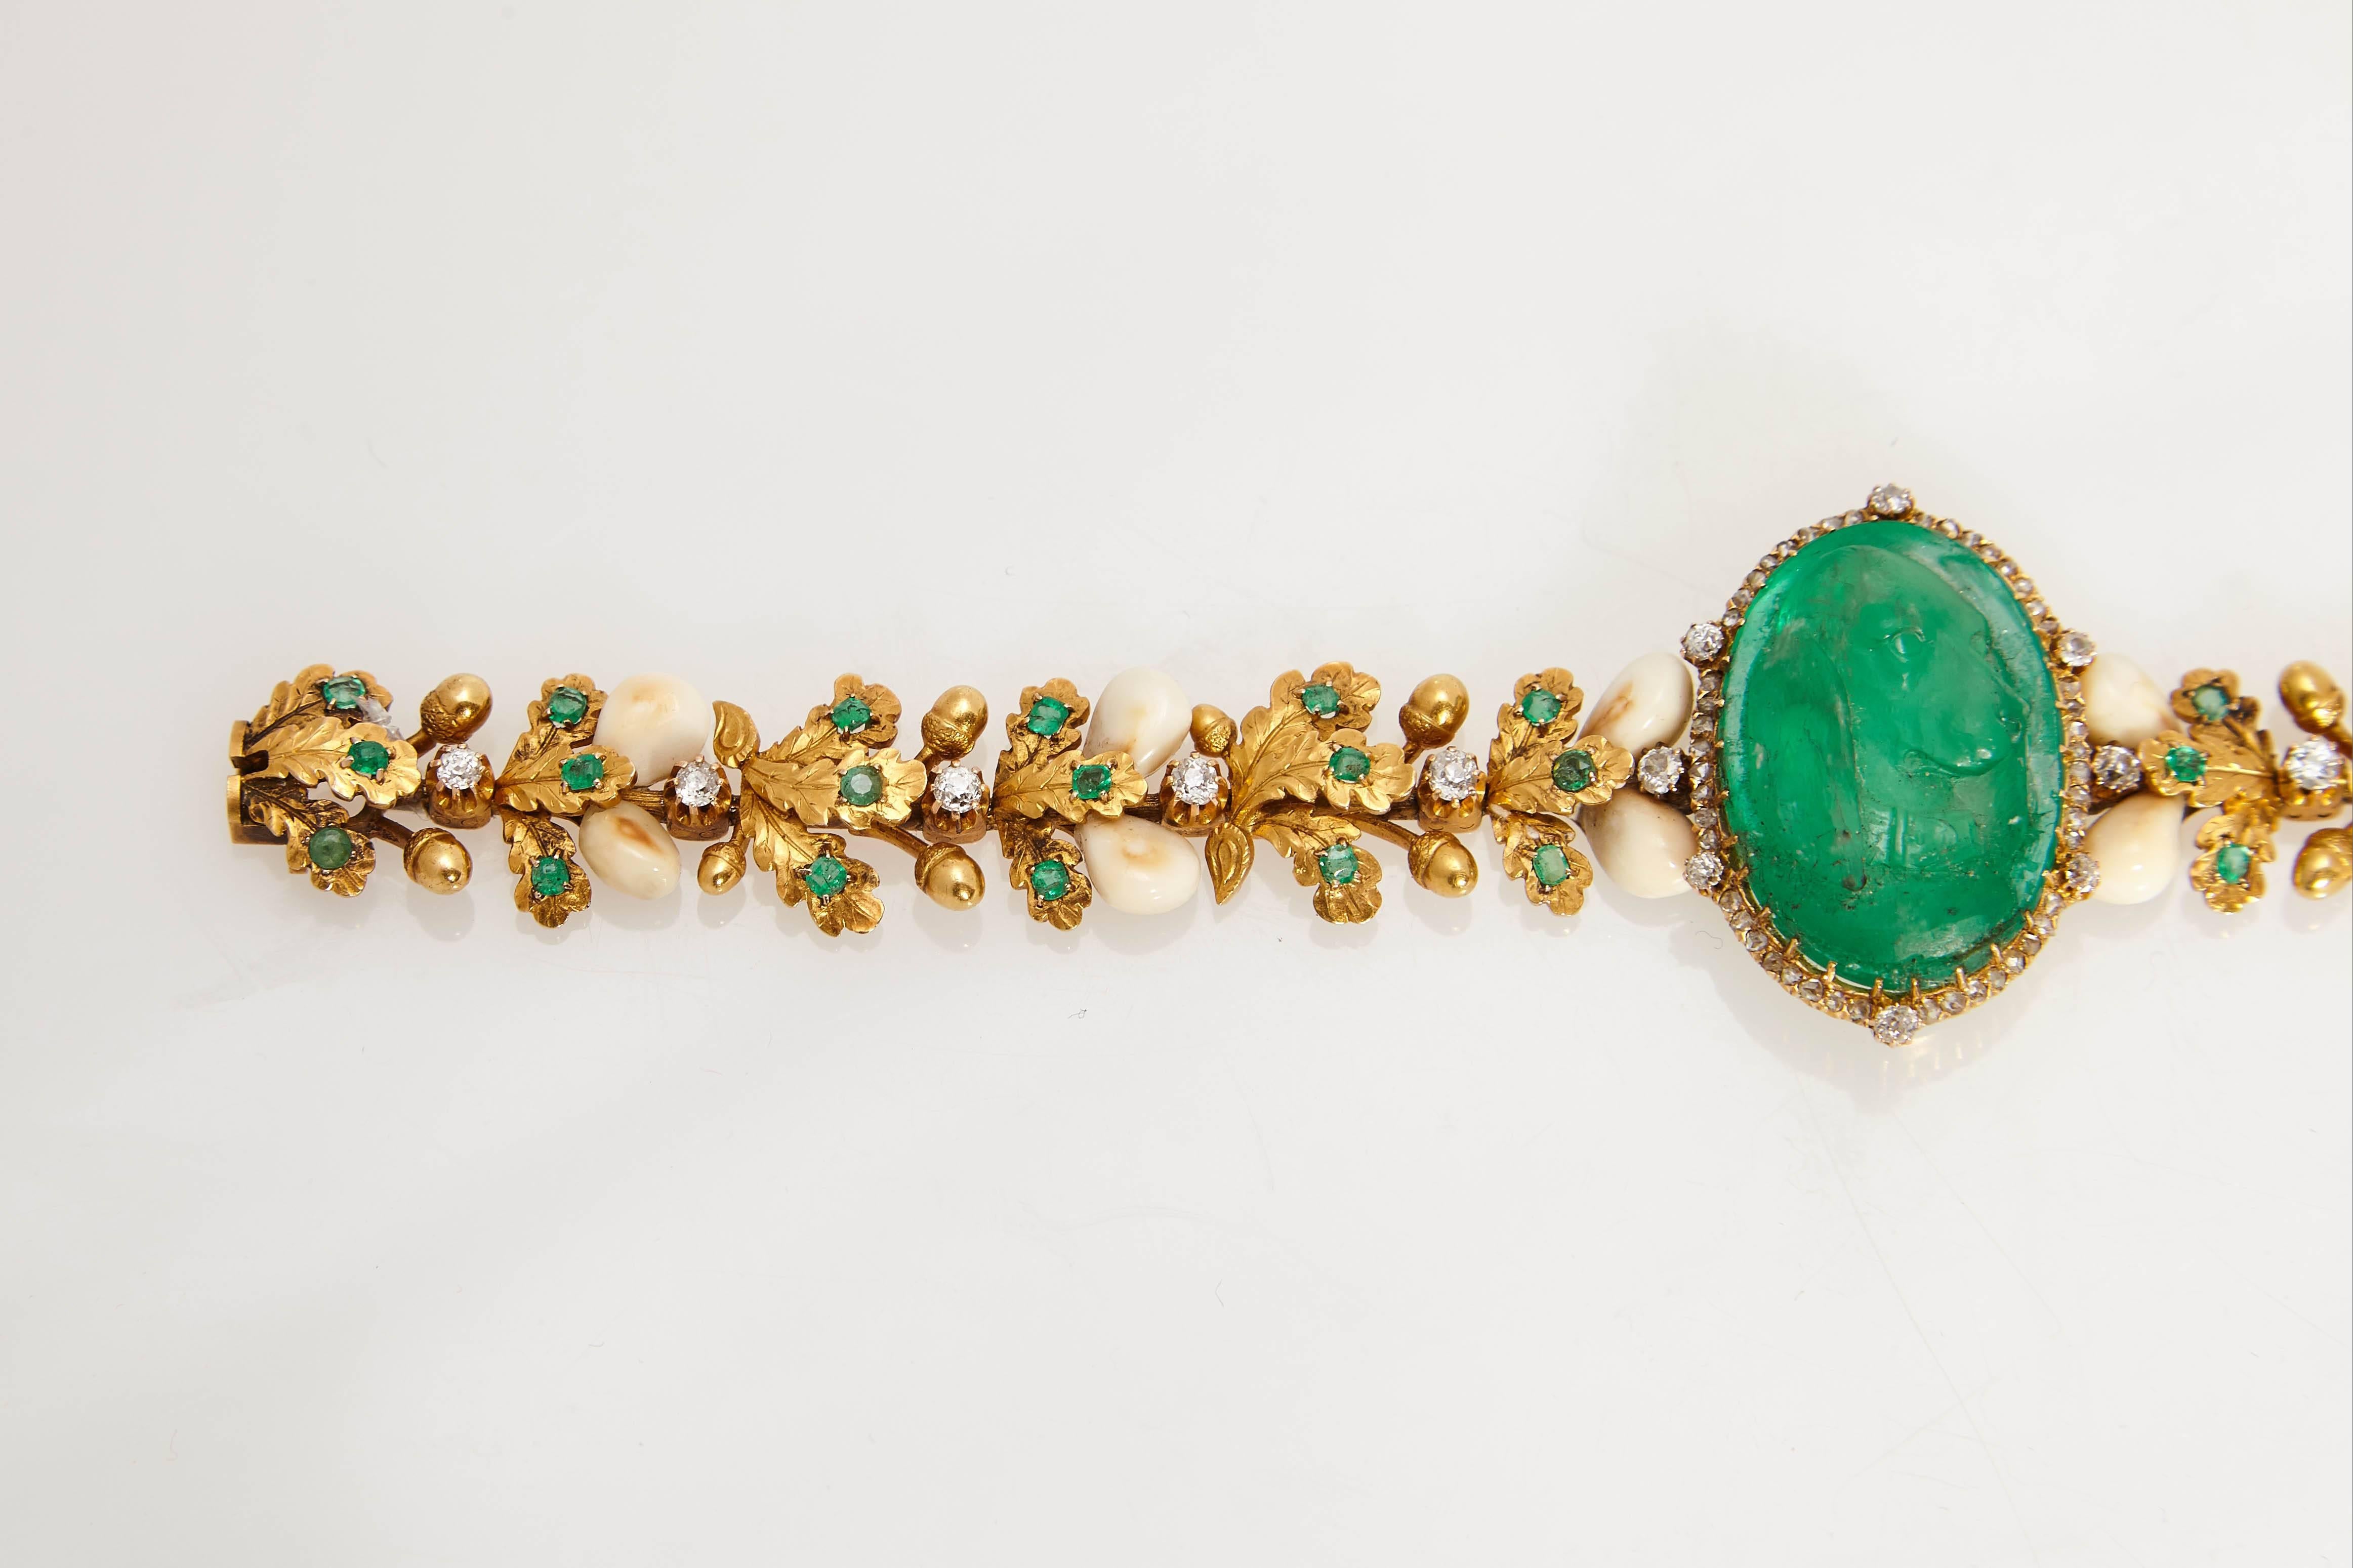 Ein sehr ungewöhnliches Armband zur Feier der Jagd, in dessen Mittelpunkt eine Smaragdkamee steht, die einen Hund darstellt. Der Körper des Armbands besteht aus Blattgold und Wildschweinzähnen, die mit Diamanten und Smaragden hervorgehoben sind.